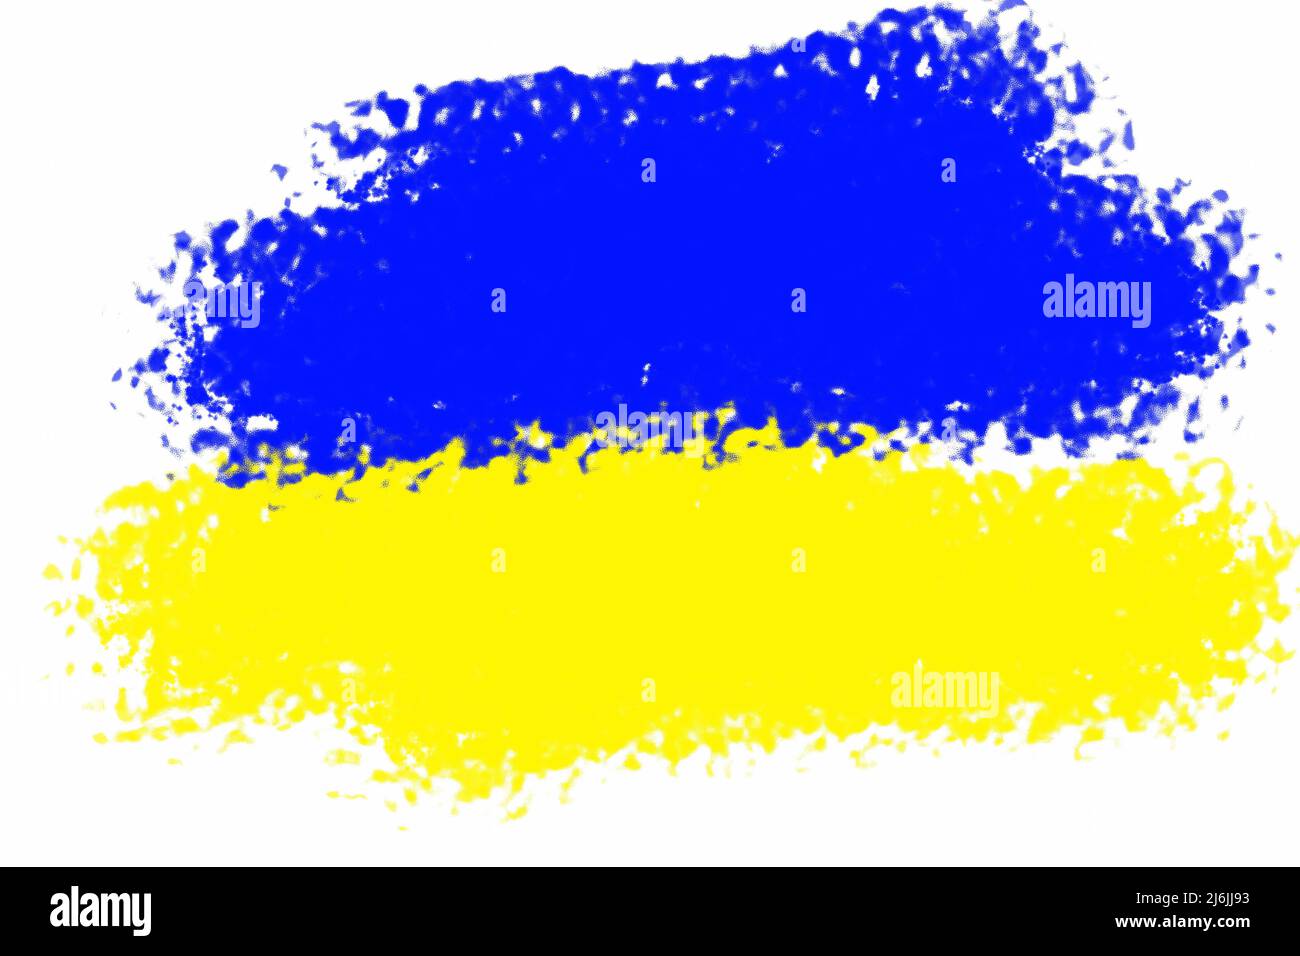 Flagge der Ukraine mit einem friedlichen blauen Himmel mit weißen Wolken und einem gesät Feld. Russlands militärische Aggression gegen die Ukraine. Krieg, kein Krieg in der Ukraine Stockfoto